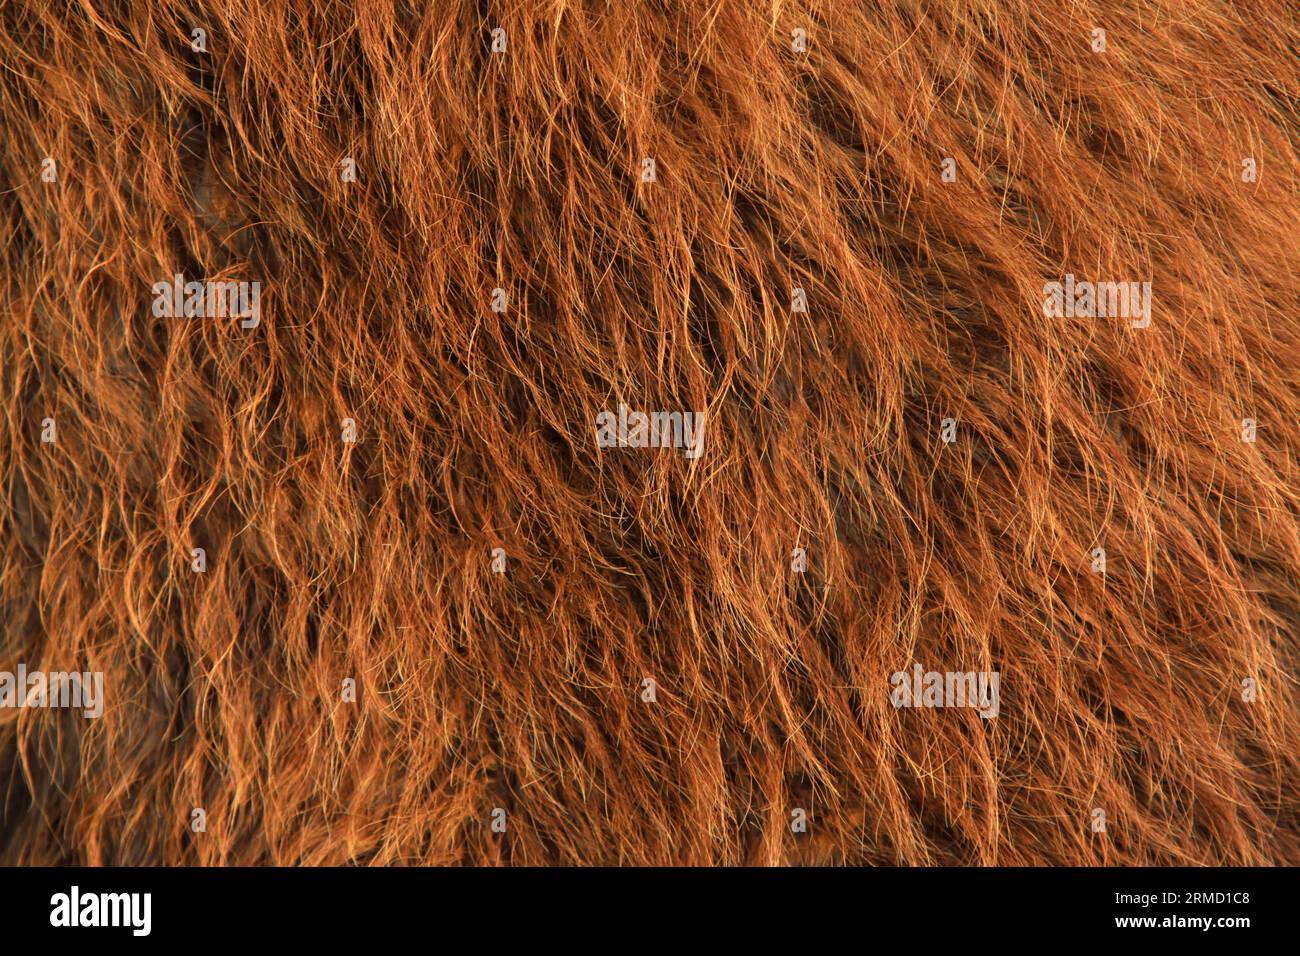 closeup of Camel's hump, closeup of photo Stock Photo